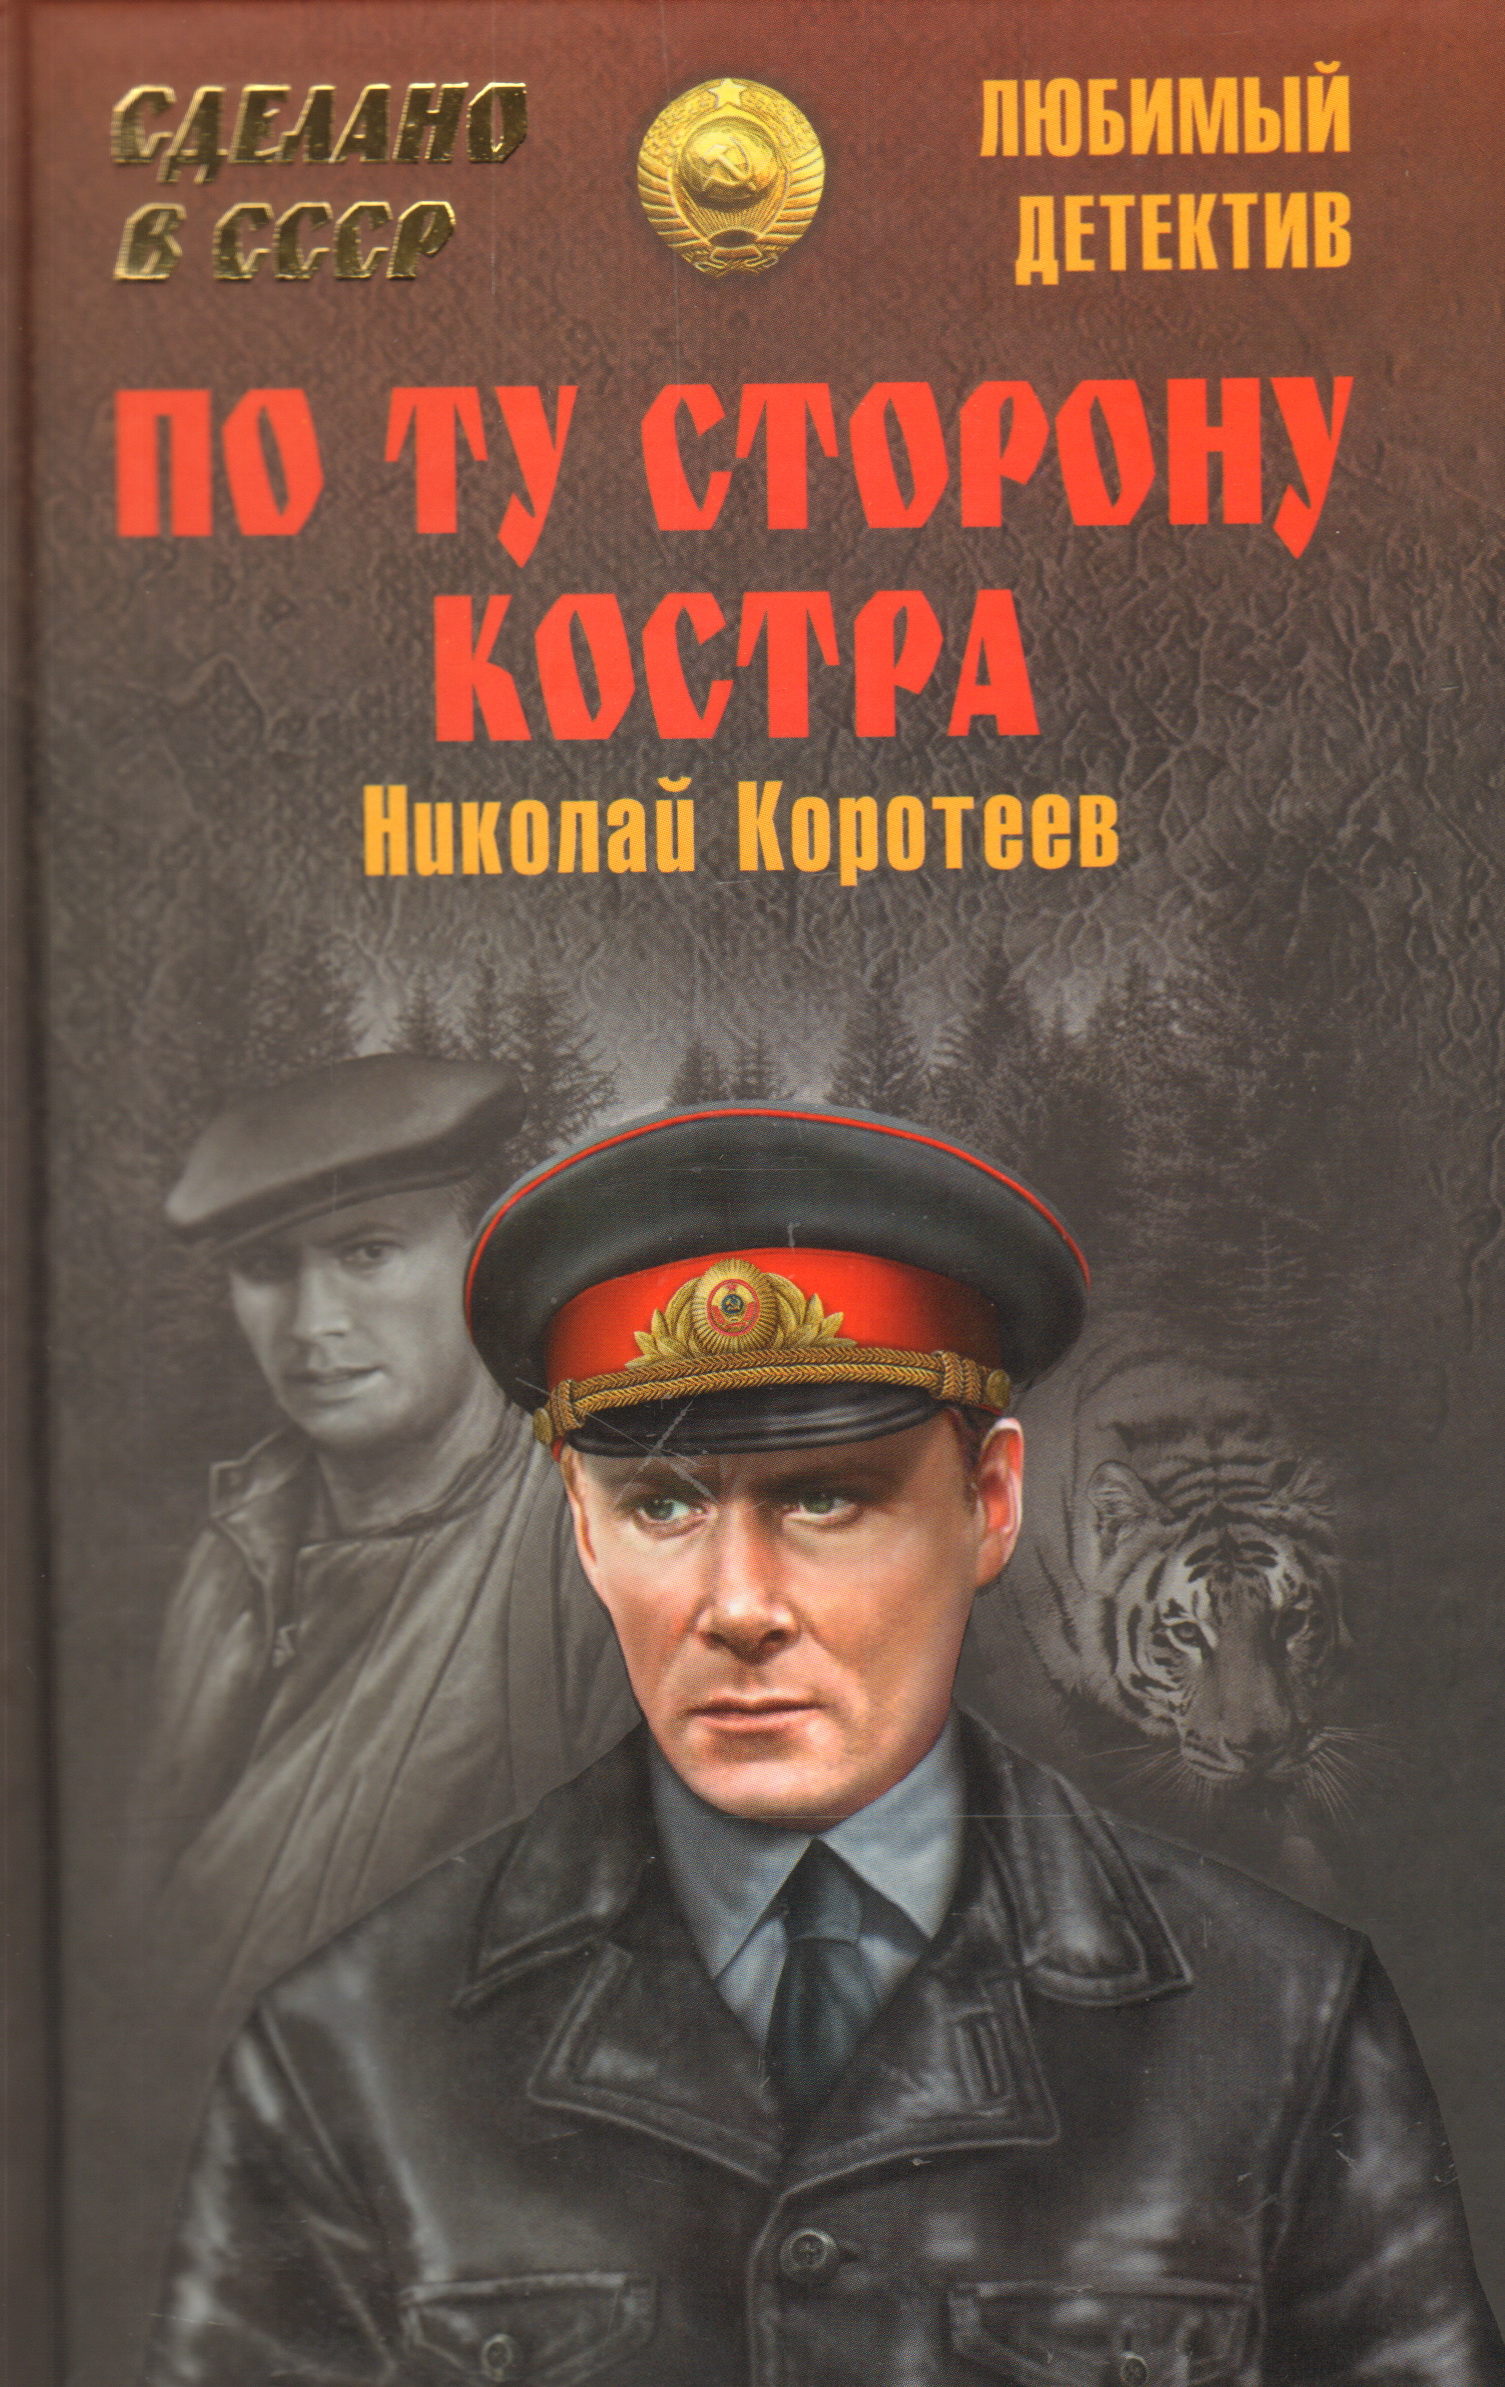 Название книги детектив. Советские детективы. Советские книги. Художественные книги. Детективы СССР книги.